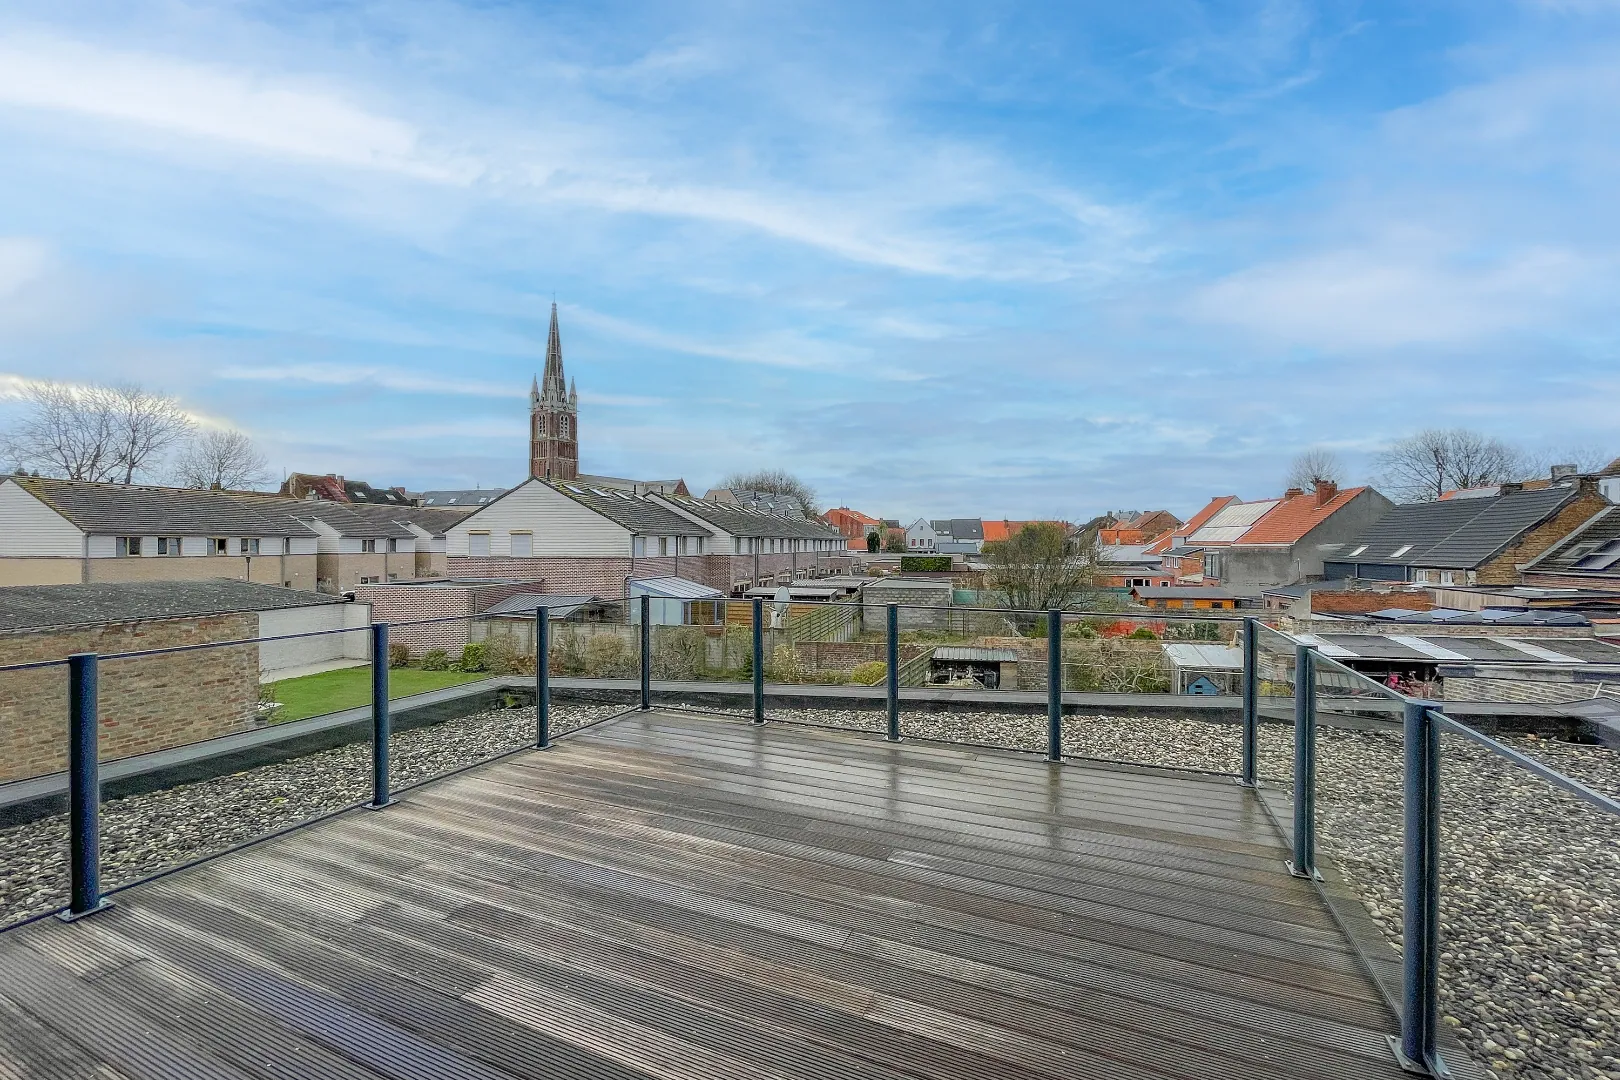  Prachtig instapklaar appartement met ruim zonnig terras in hartje Oudenburg